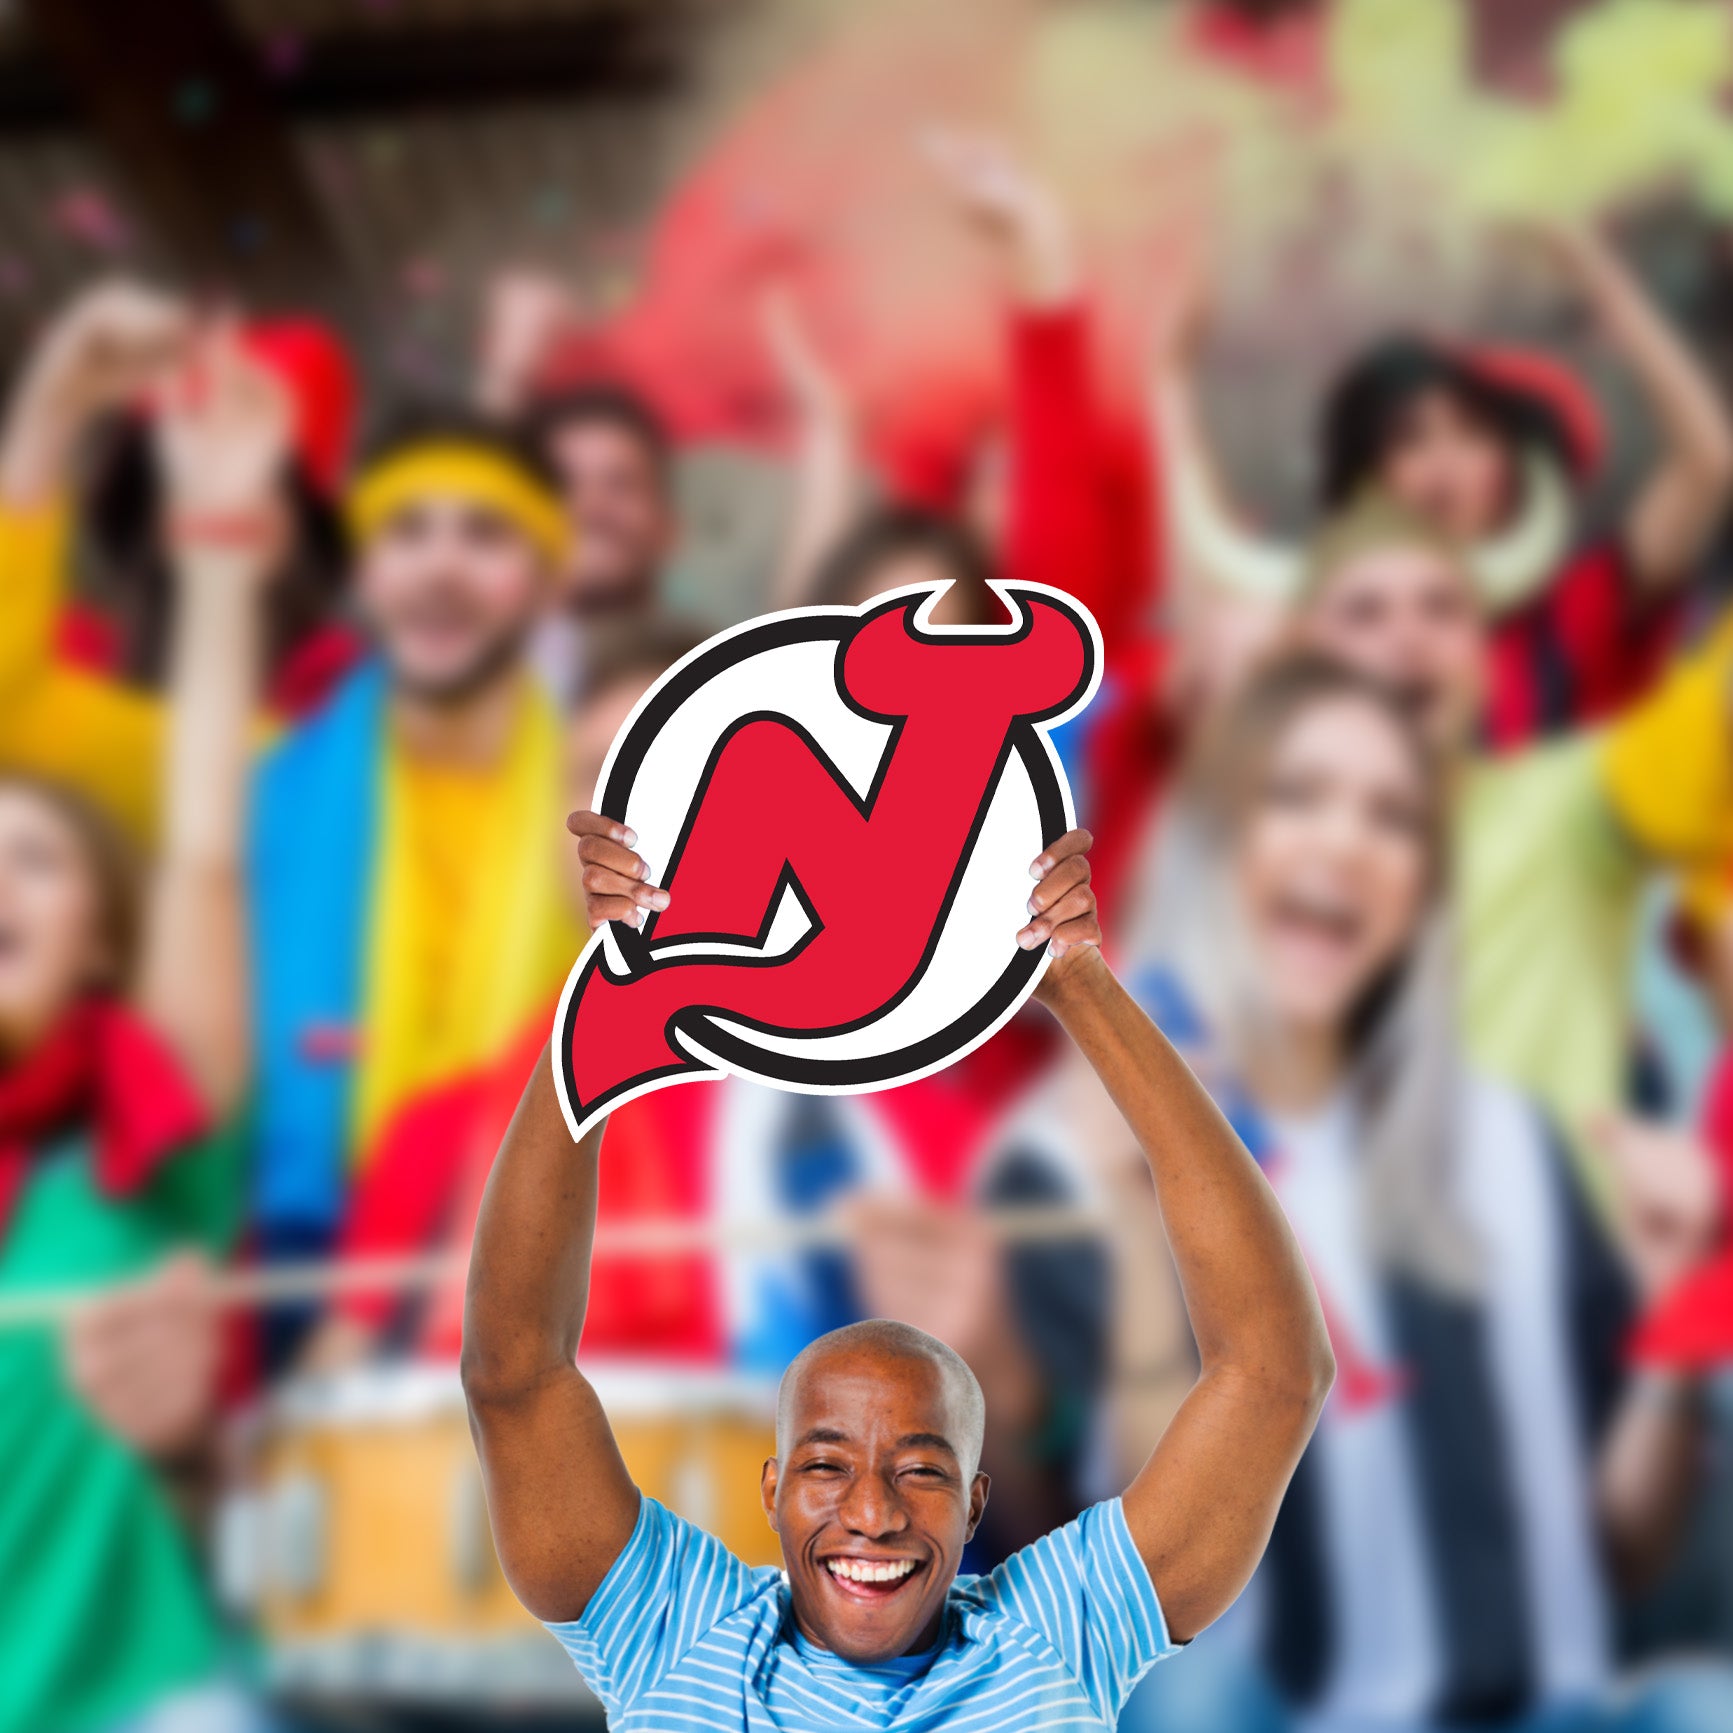 New Jersey Devils: 2022 Logo Foam Core Cutout - Officially